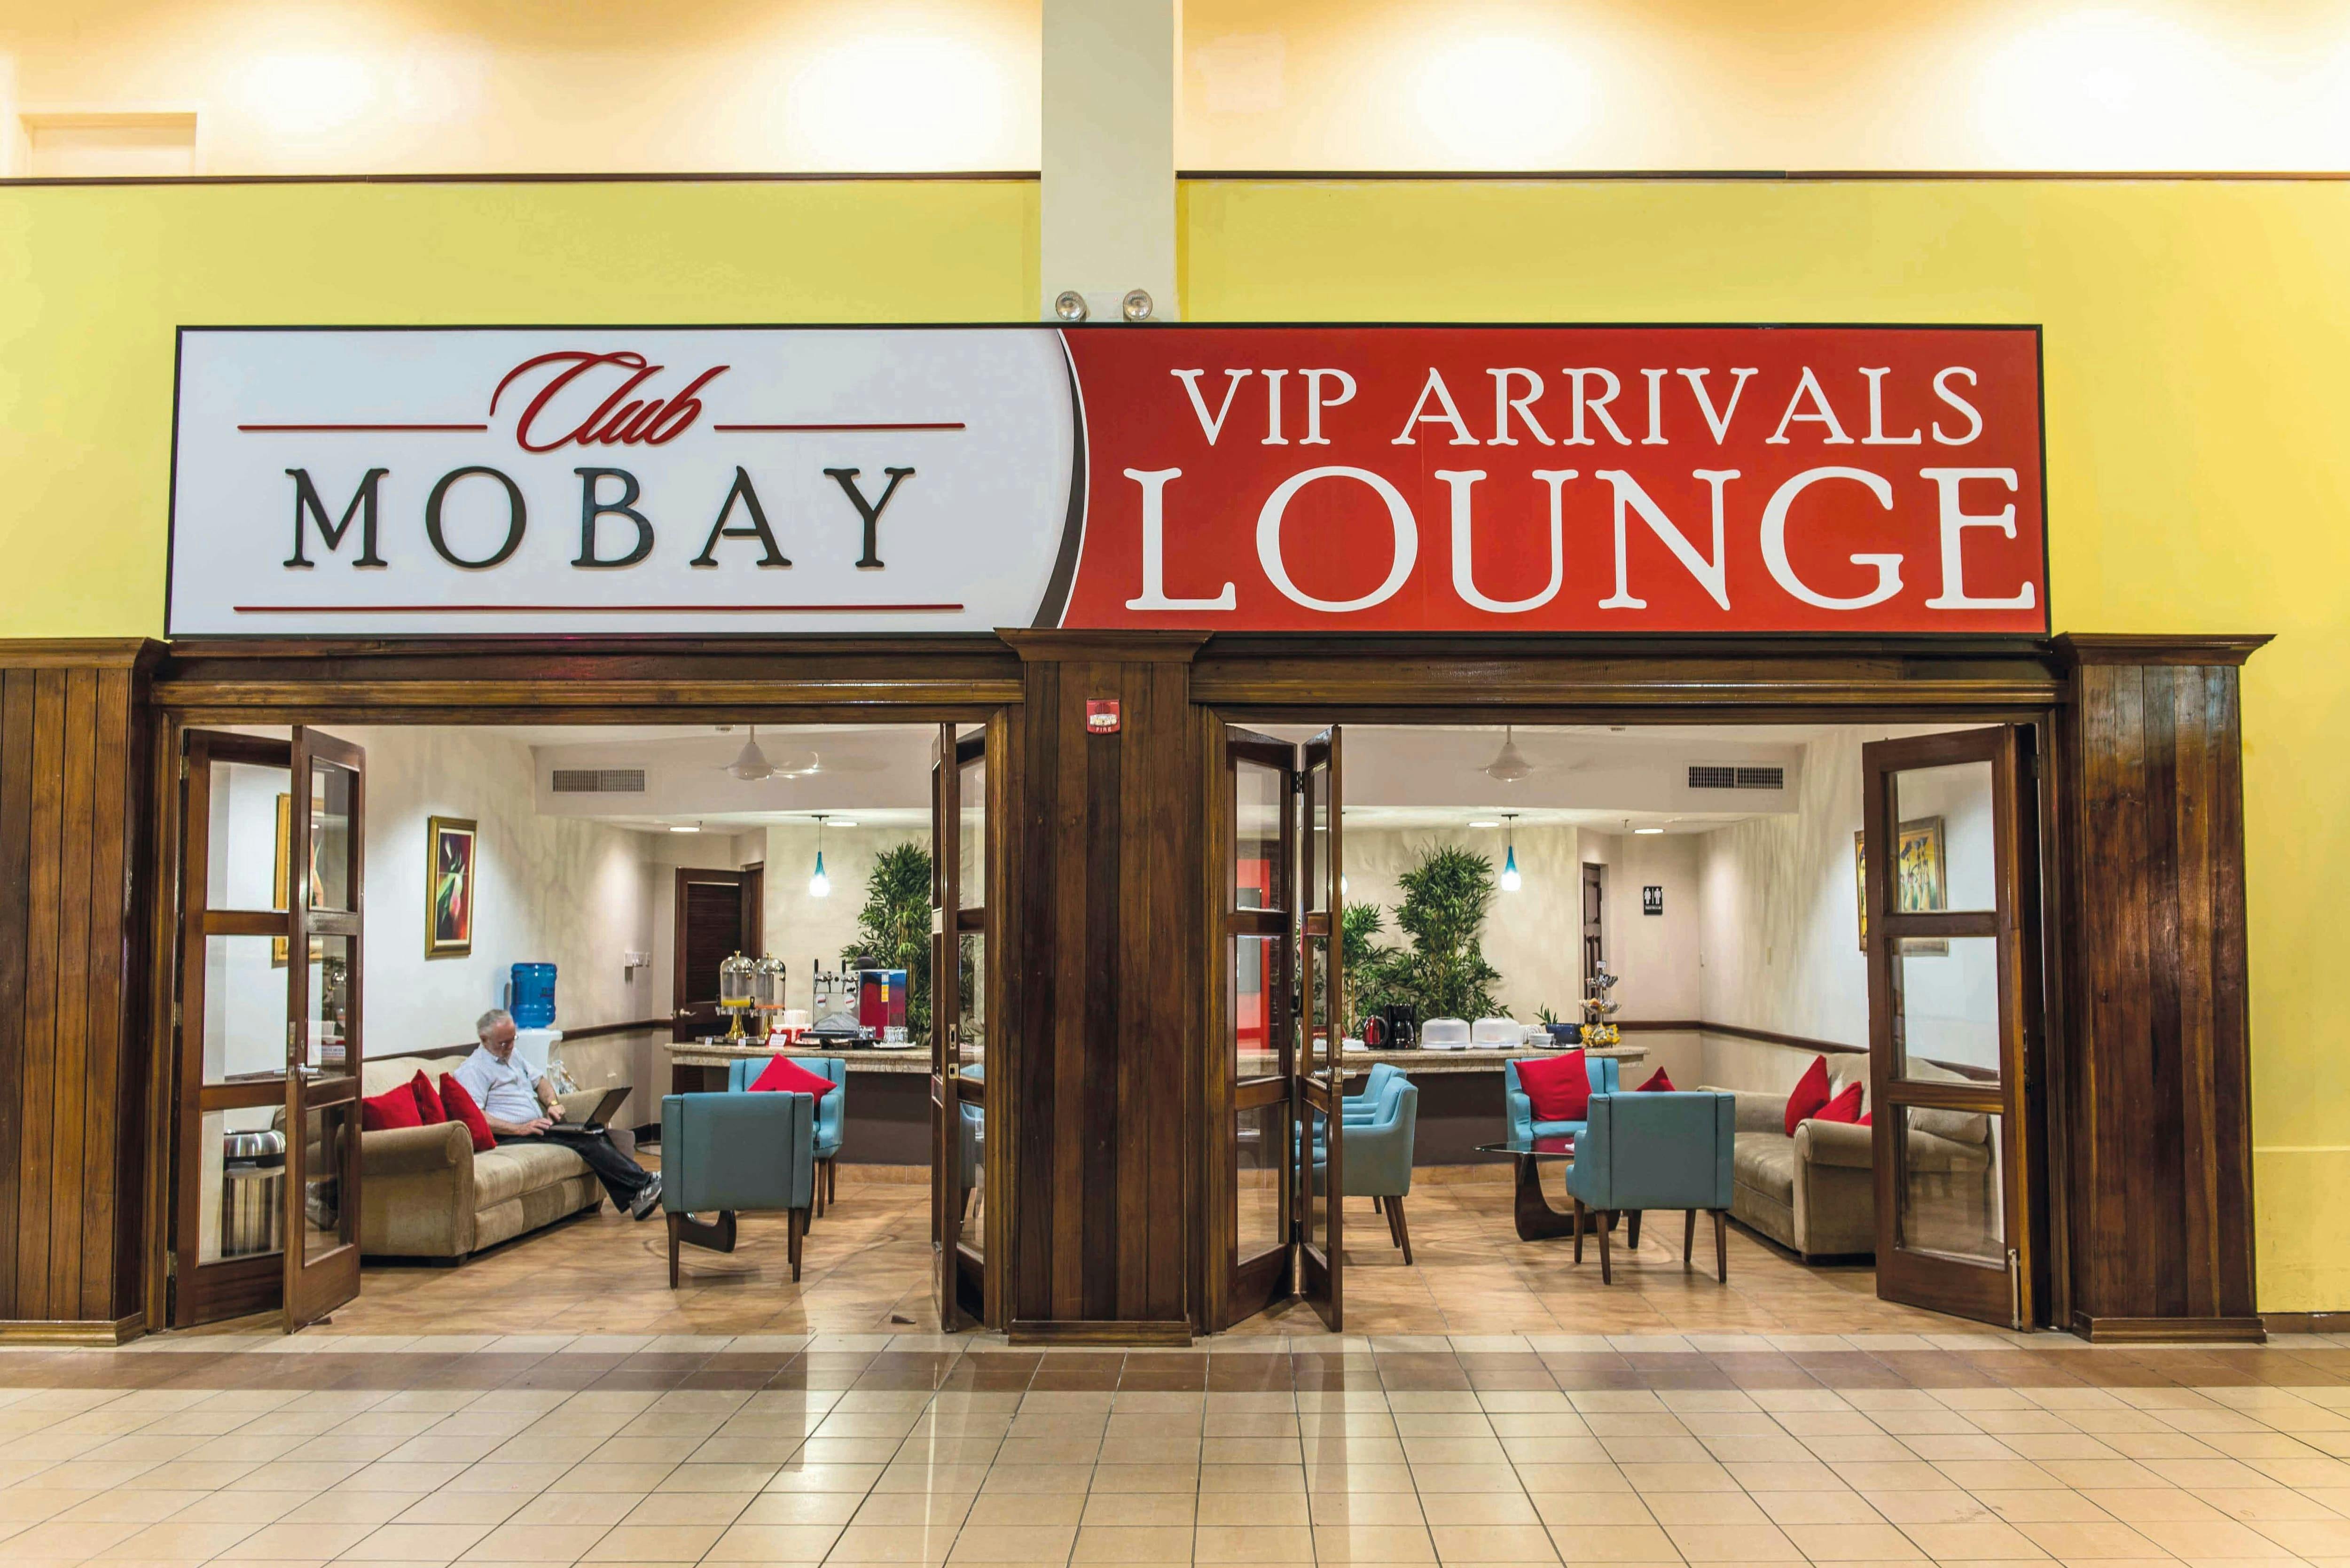 Club Mobay Flughafen VIP Lounge